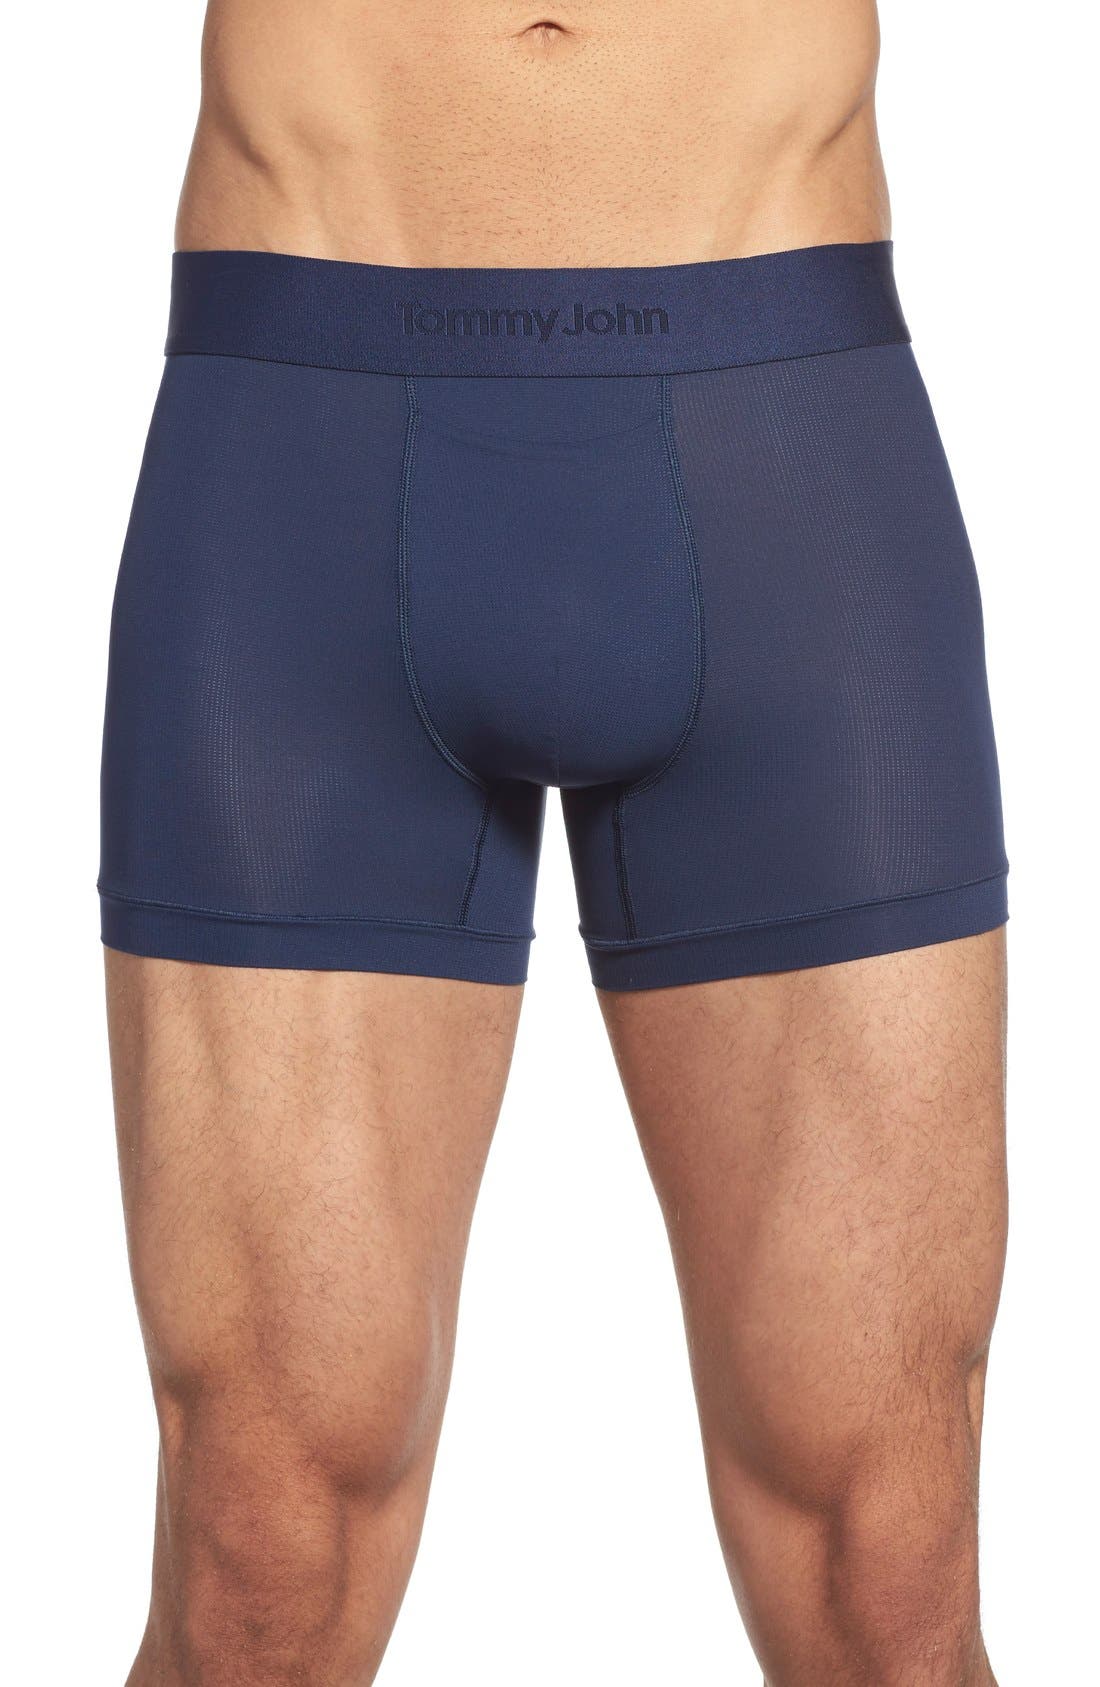 tommy johns underwear nordstrom